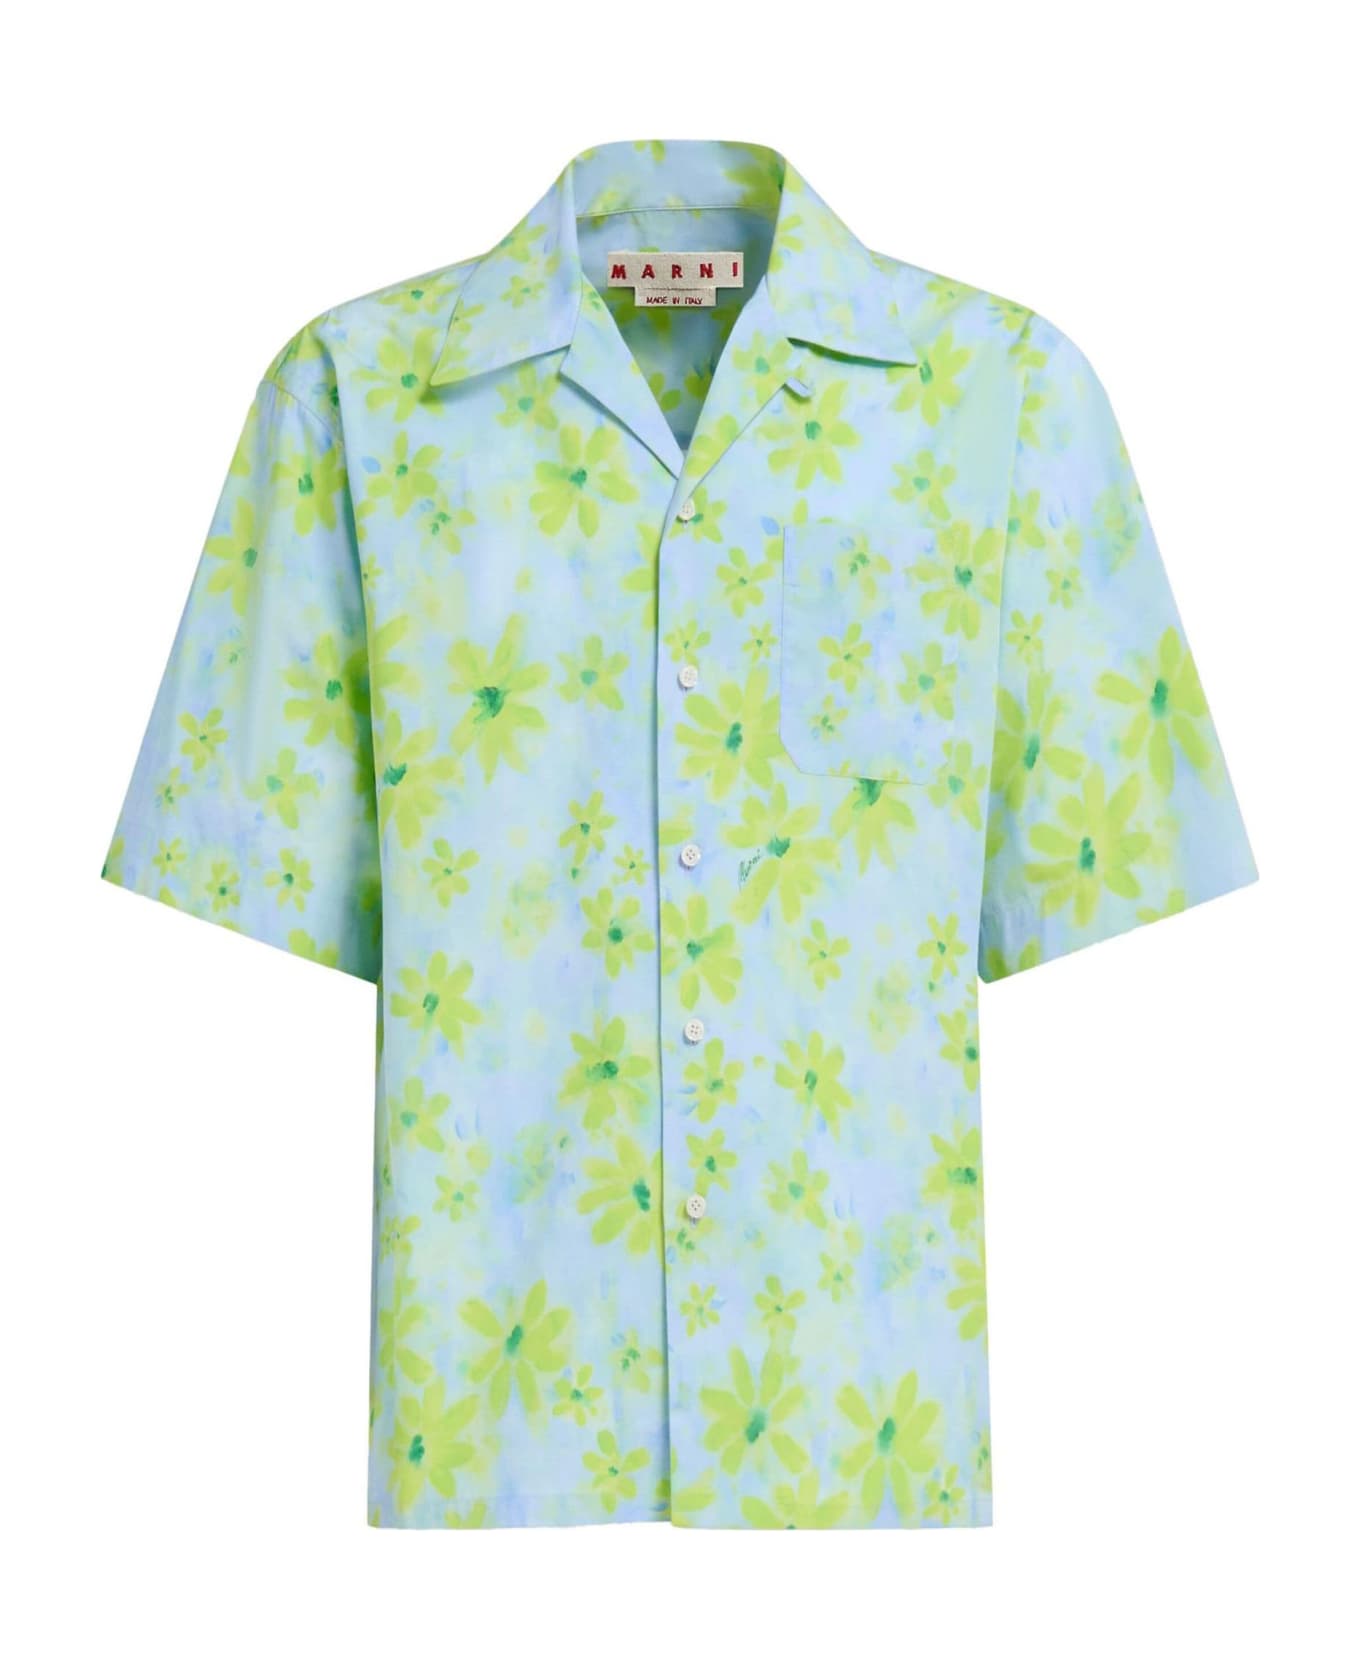 Marni 'parade' Shirt - Aquamarine シャツ